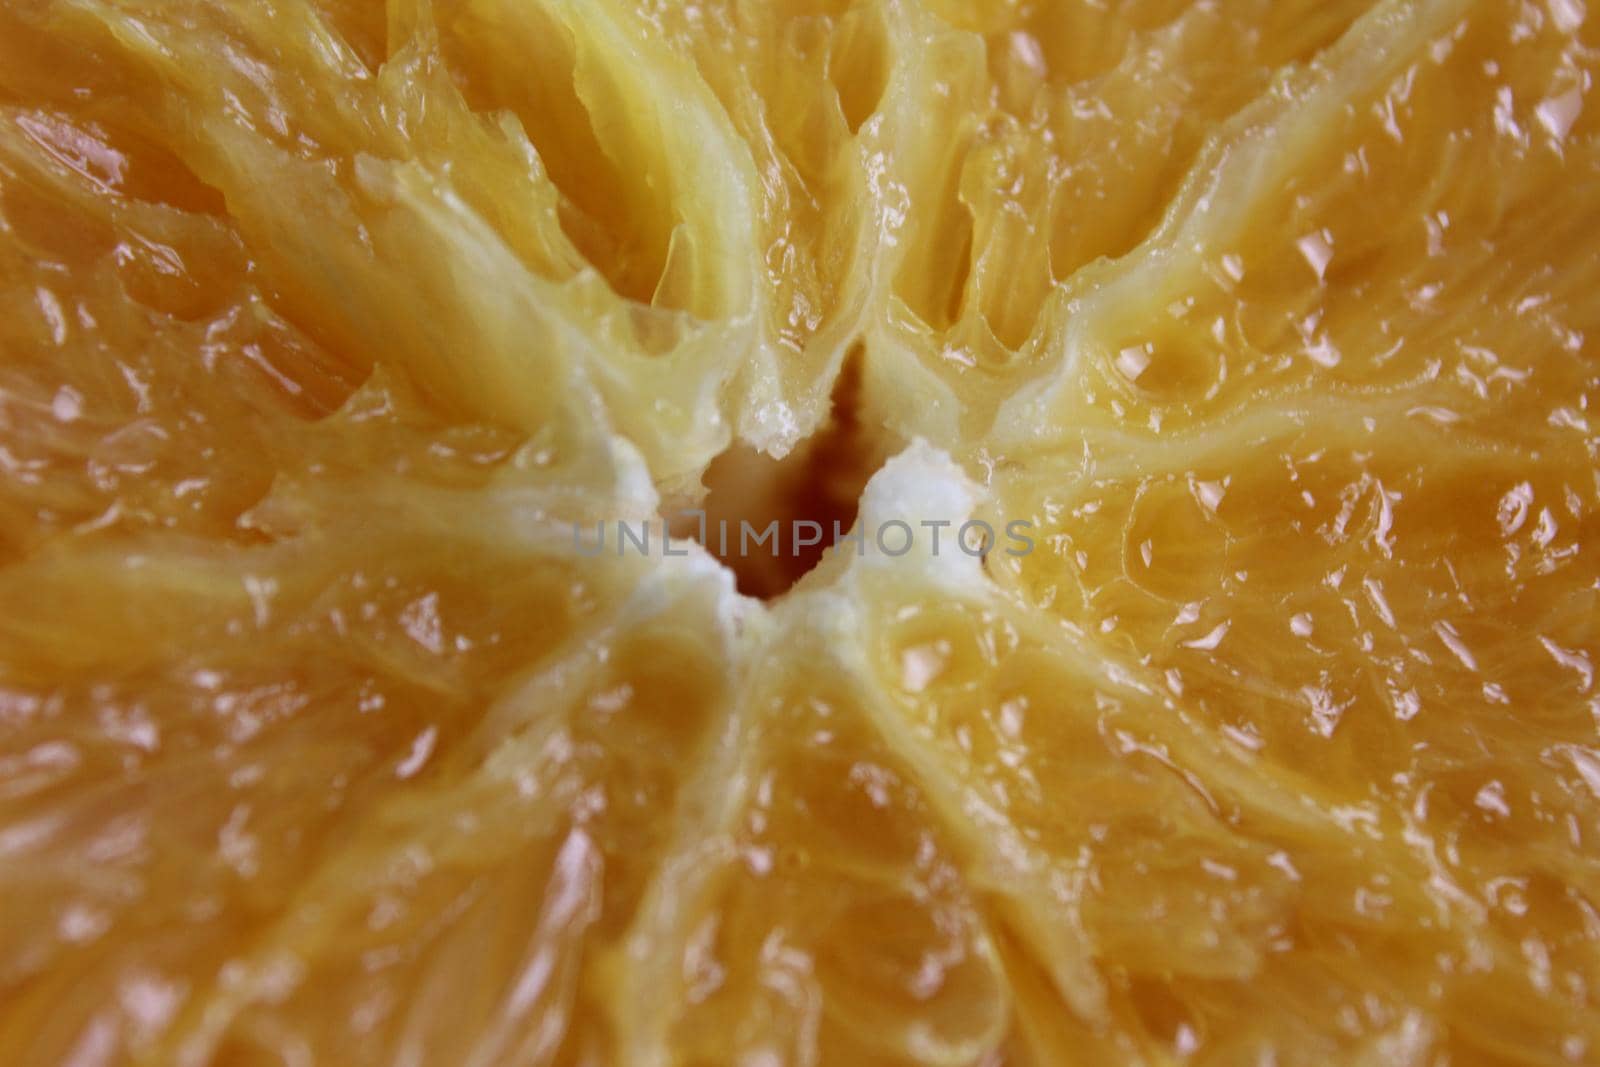 cut of the orange close-up. Macro photo of eating orange fruit. Orange fruit background by Shoba